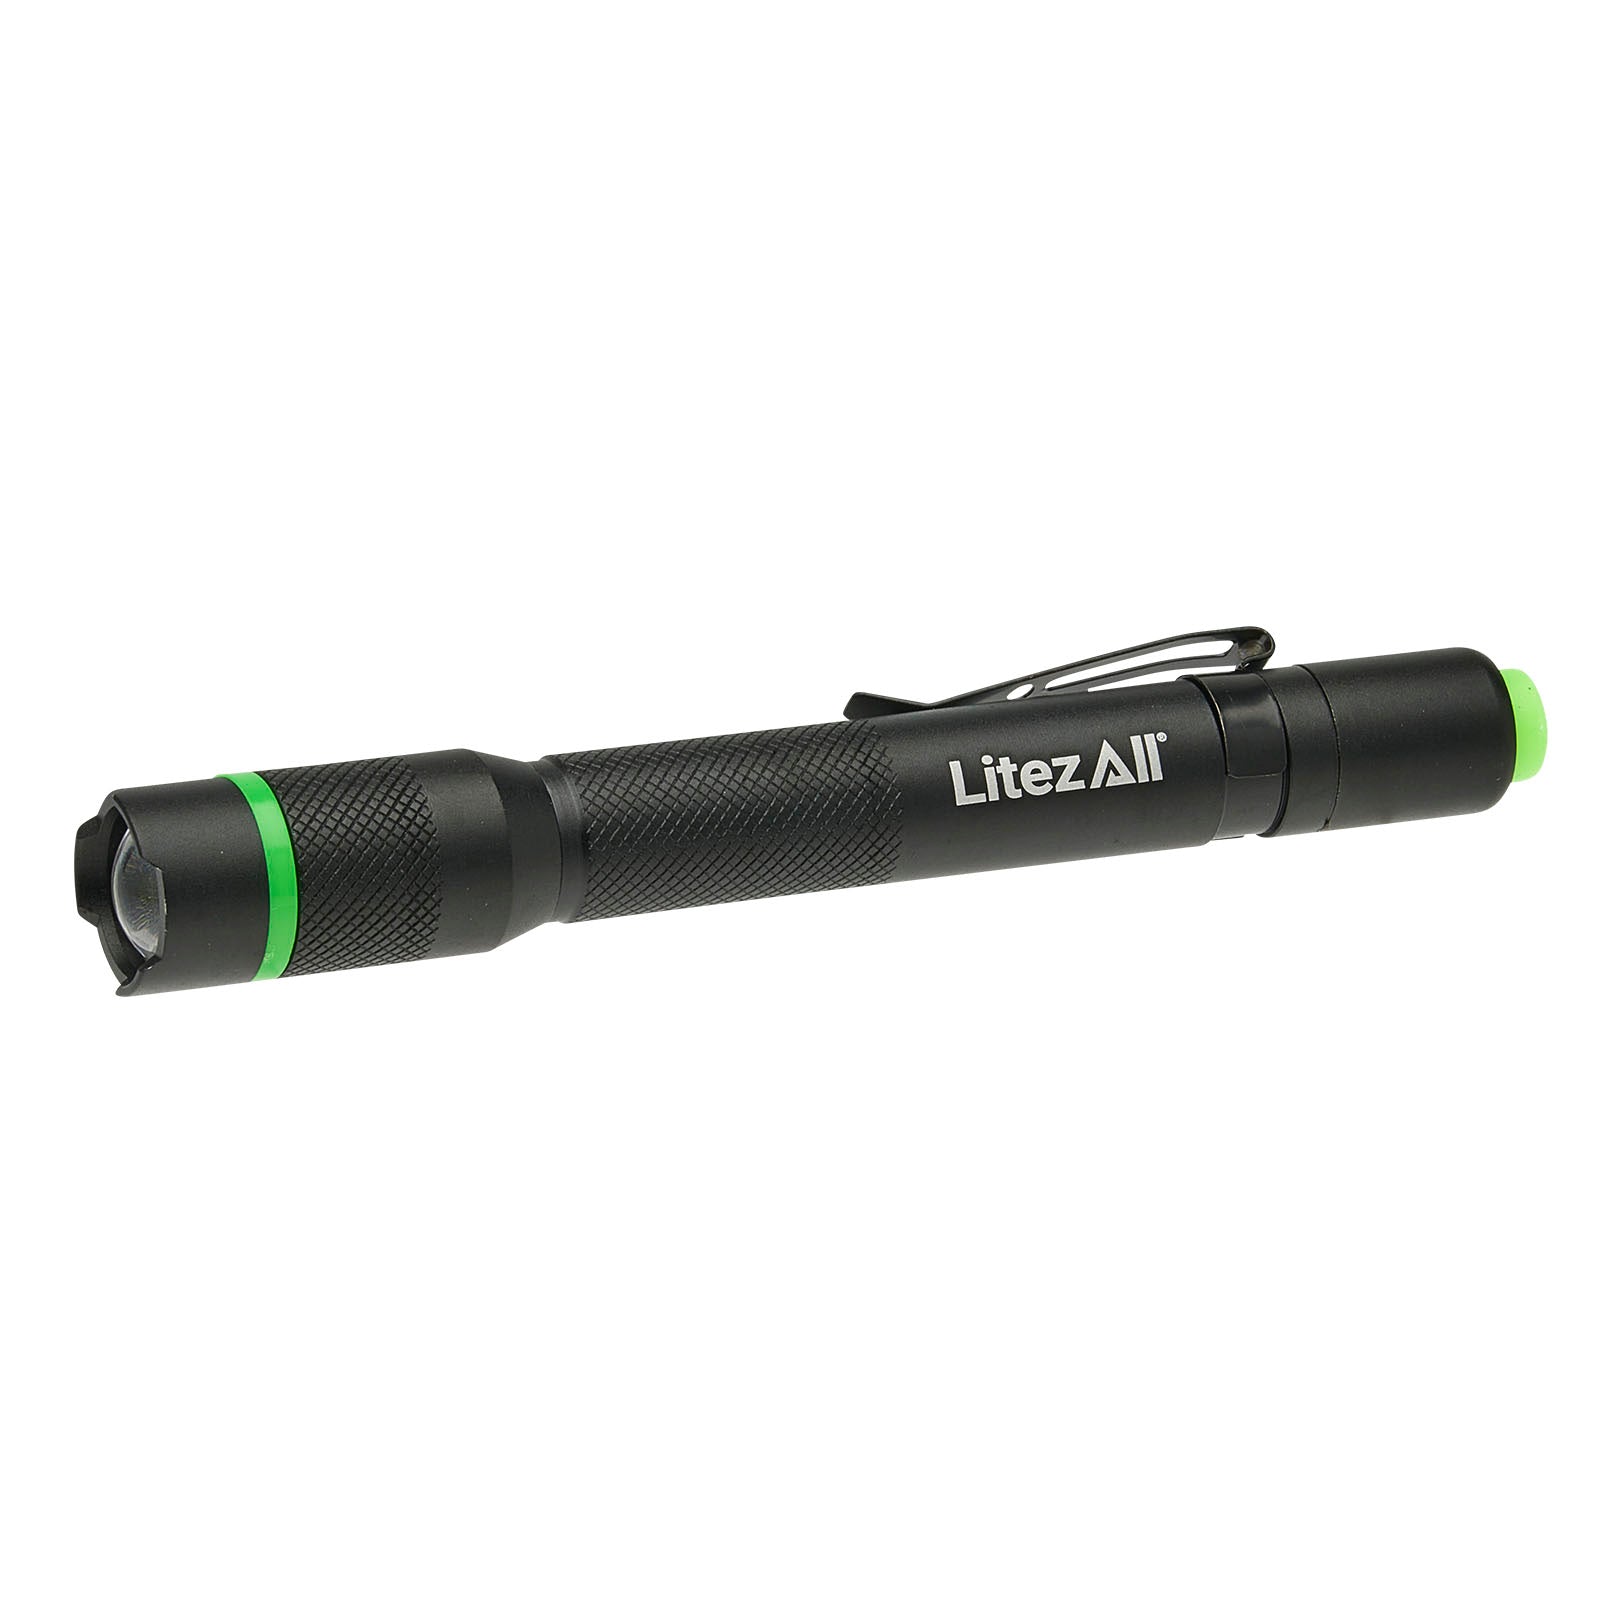 LitezAll 250 Lumen Pen Light - LitezAll - Pen Light - 1